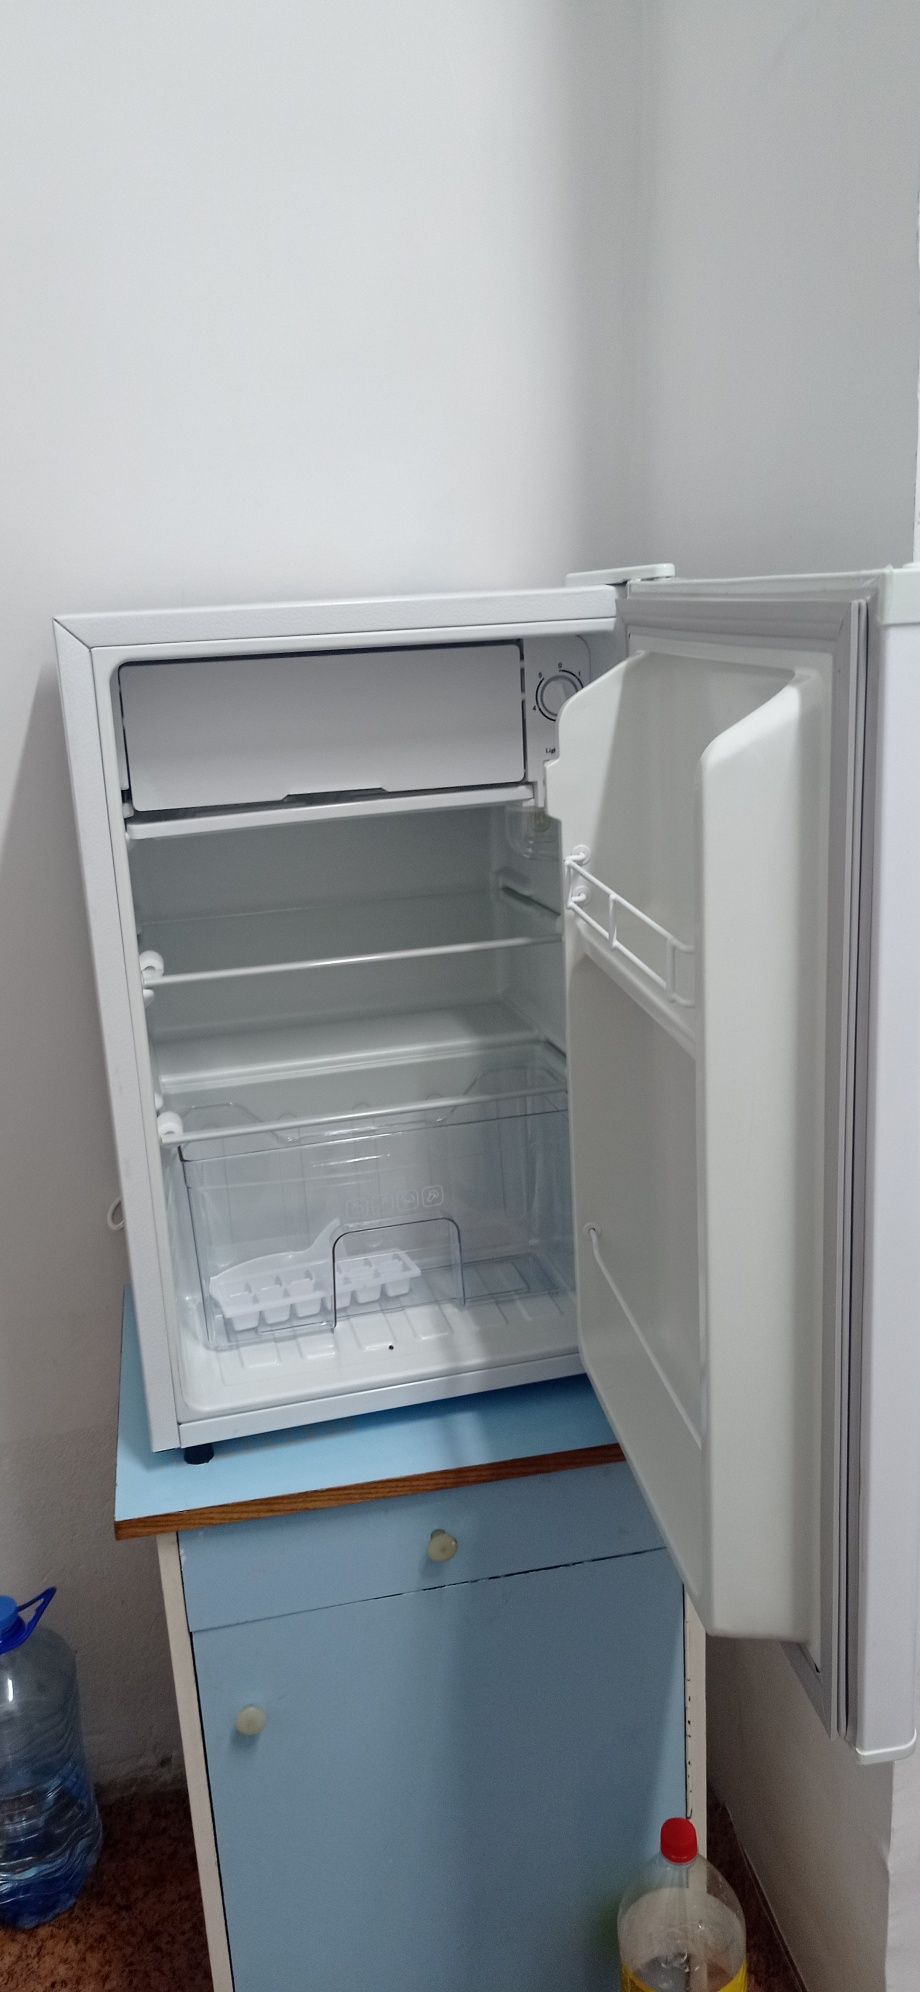 Продам новый мини холодильник MUXxED ,